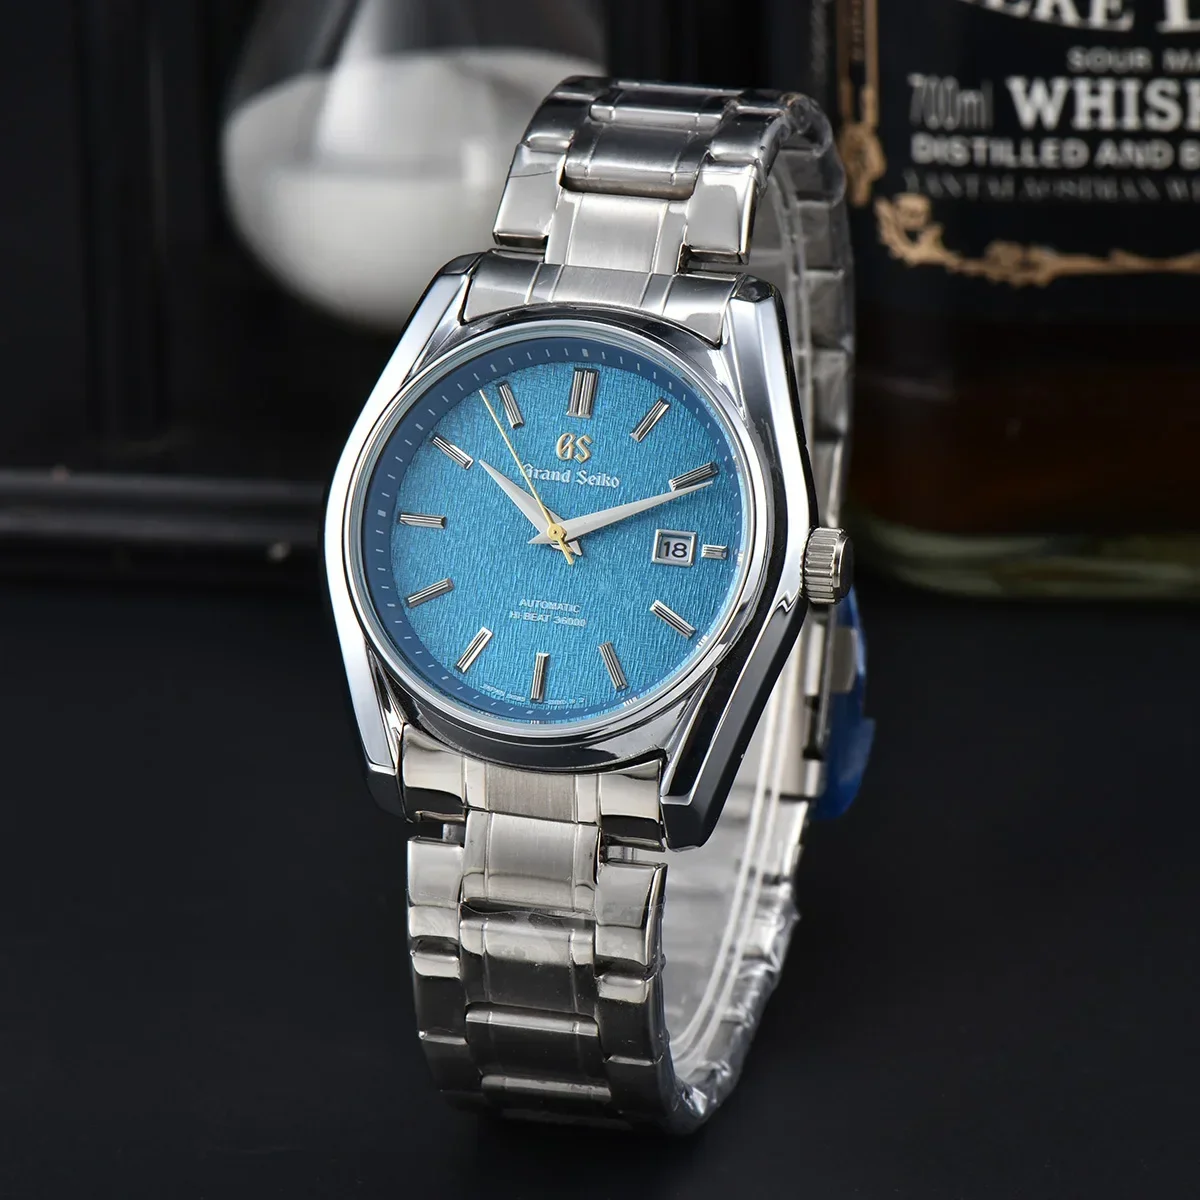 

Новые роскошные брендовые кварцевые часы Grand Seiko SLGC001G Tentagraph Evolution 9 коллекция со стальным ремешком хронограф AAA для мужчин